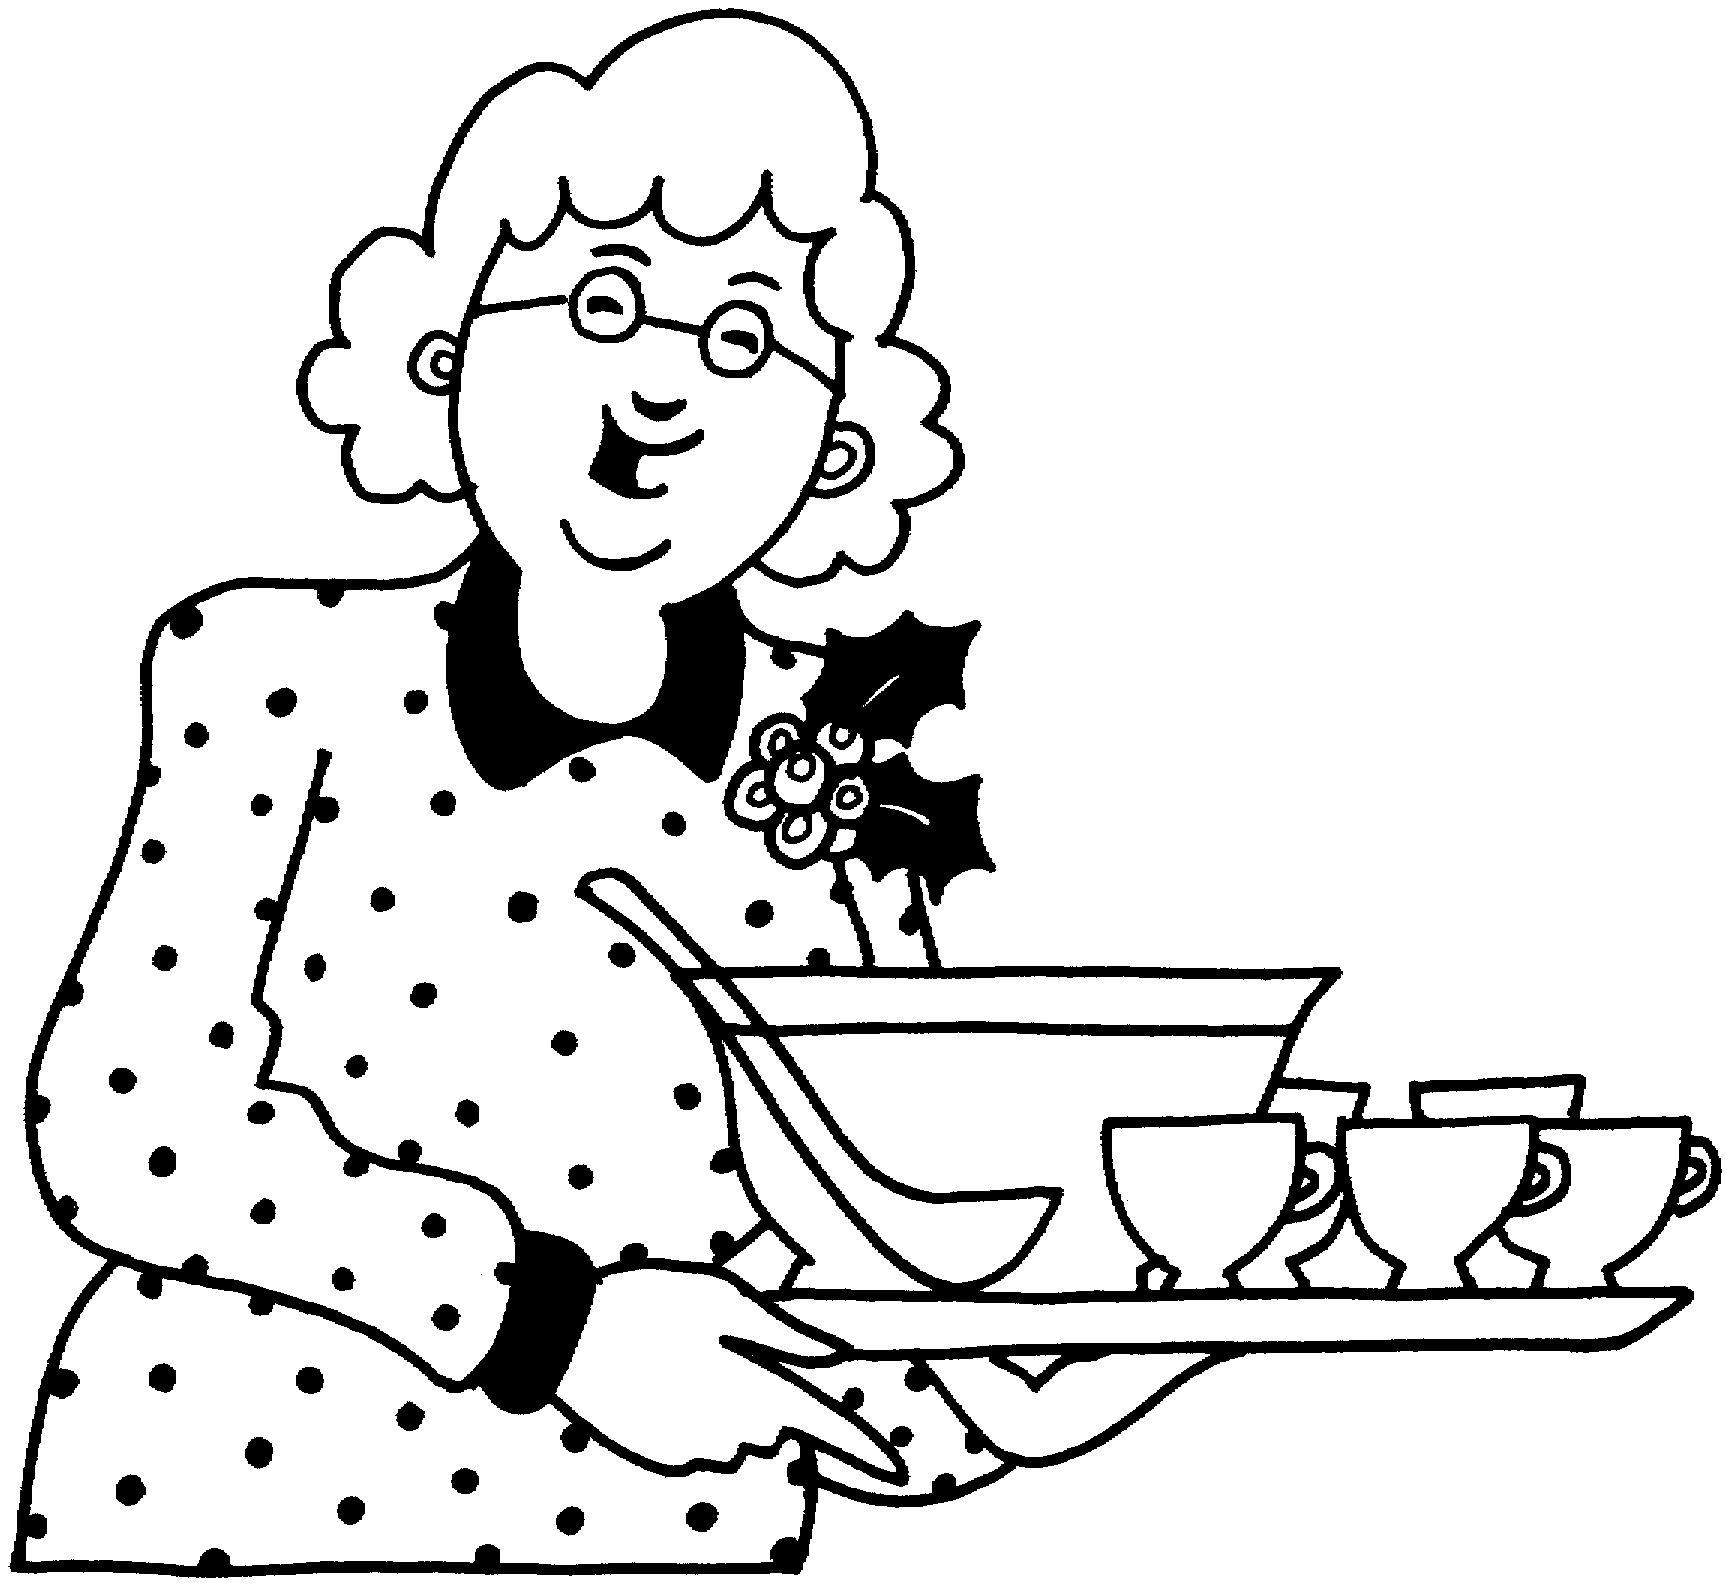 Няня моет посуду. Раскраска бабушка. Раскраски для пожилых. Бабушка раскраска для детей. Бабушка рисунок.